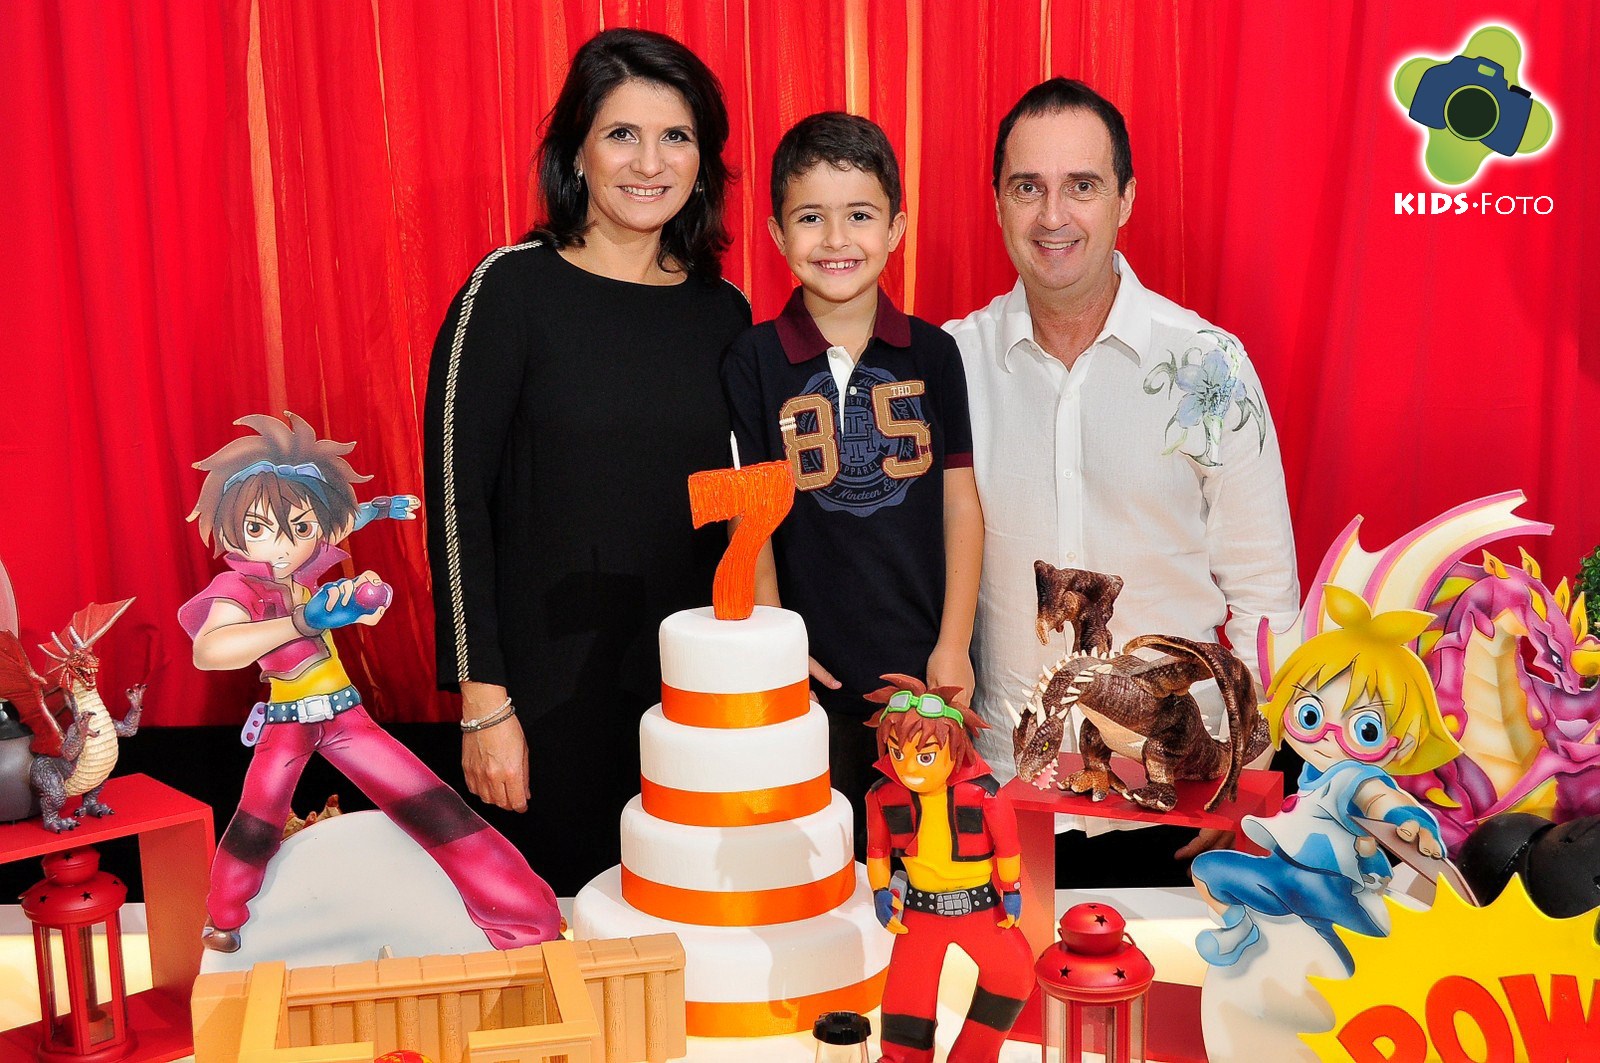 Festa de aniversário de 7 anos do Gustavo, realizada na Rola Festa, por Kids Foto